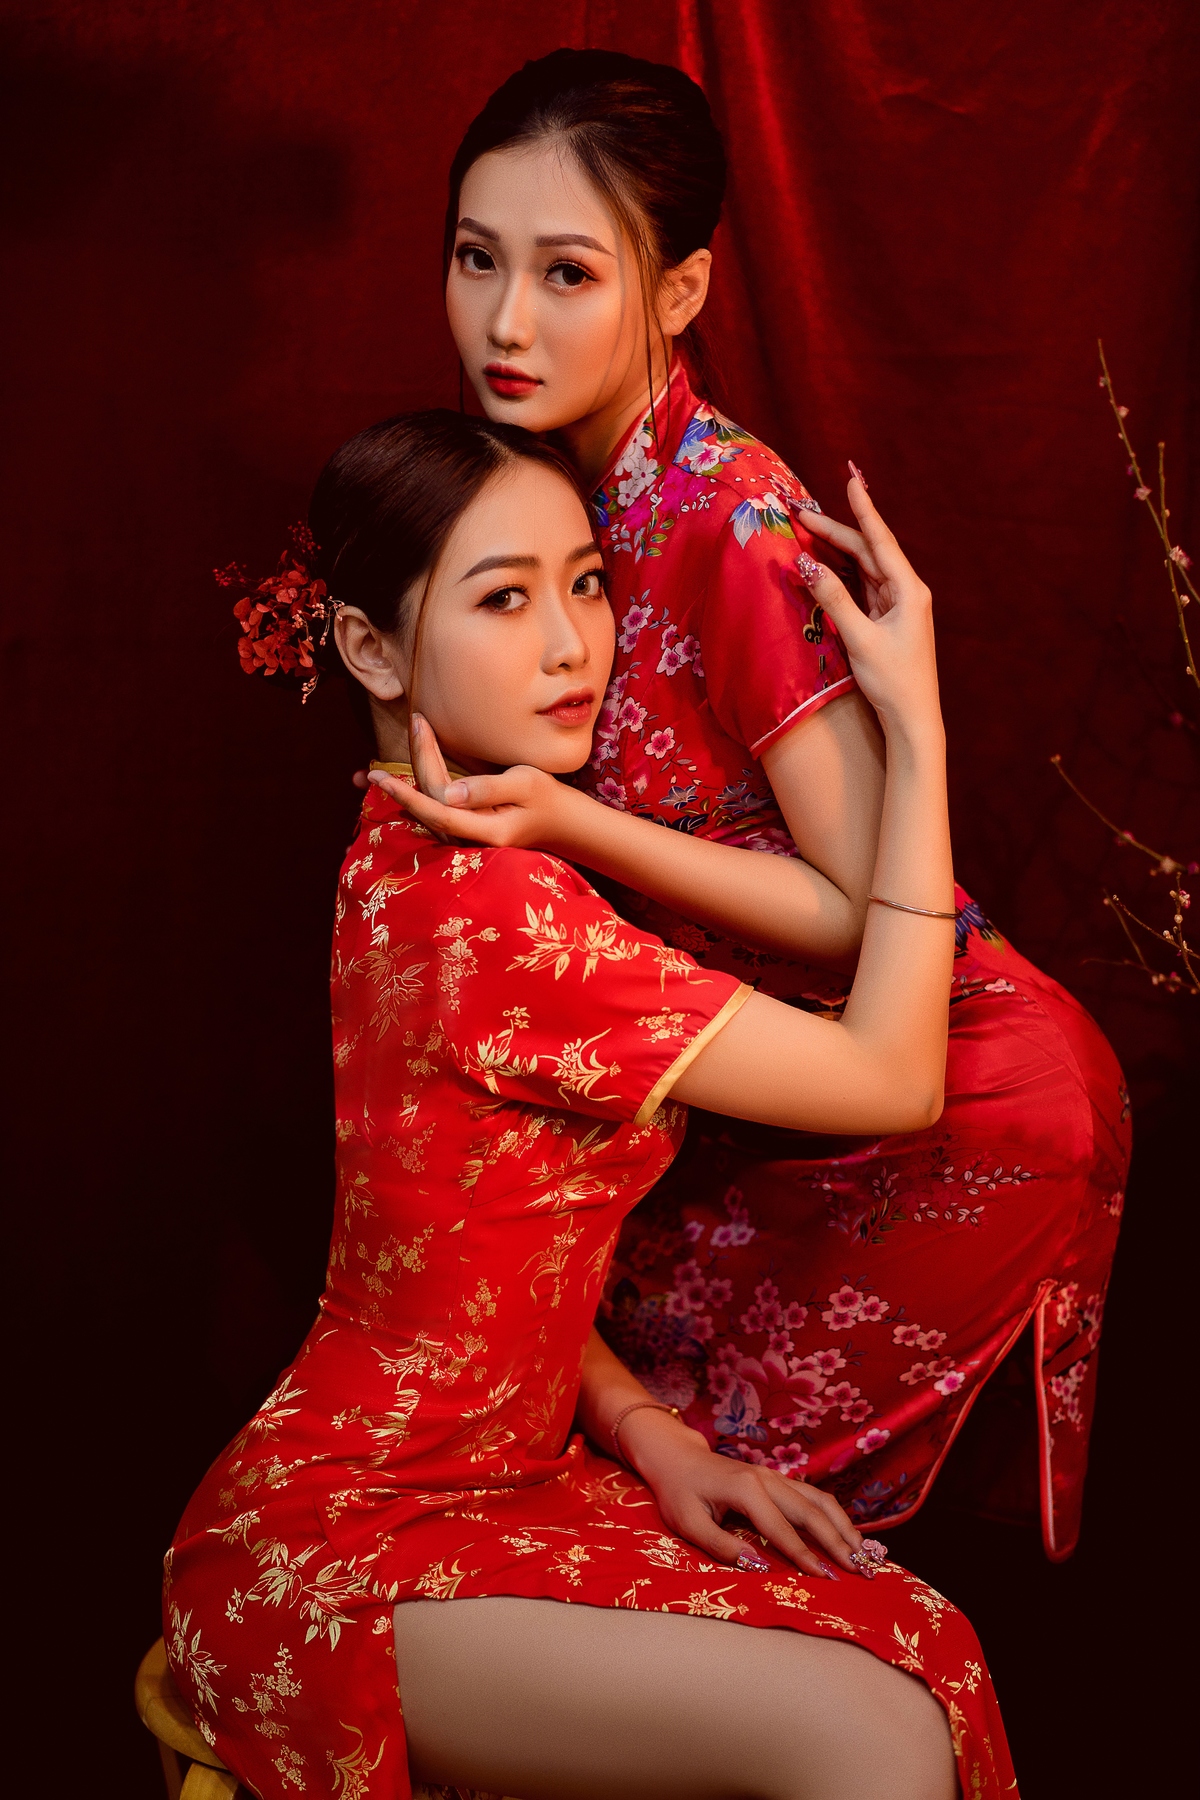 <p> Với nét đẹp đậm chất miền Tây, Ngọc Đào cho biết hai chị em đều tham gia cuộc thi Miss FPT Cần Thơ 2020 và đó là bước ngoặt lớn trong thanh xuân đại học của mỗi người.</p>